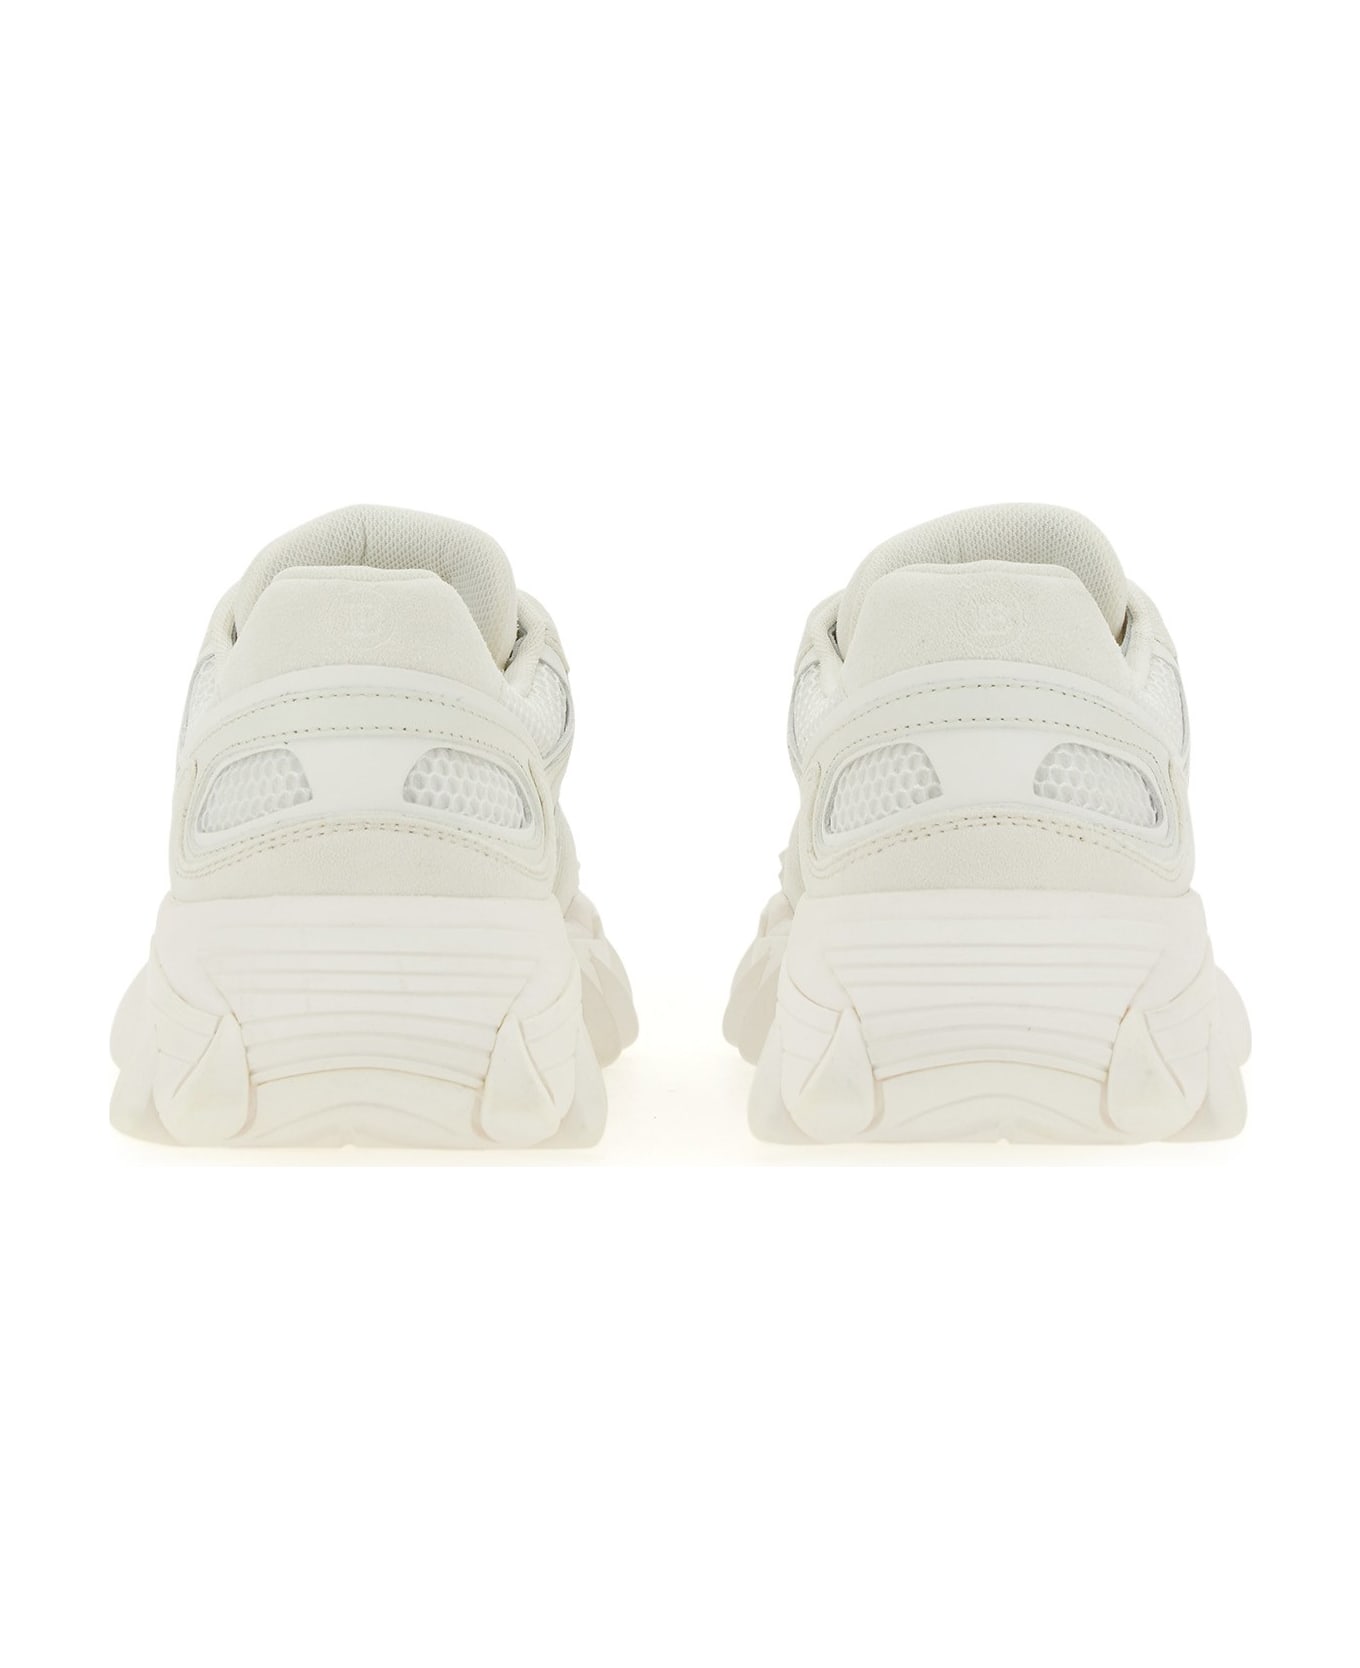 Balmain B-east Sneakers - white